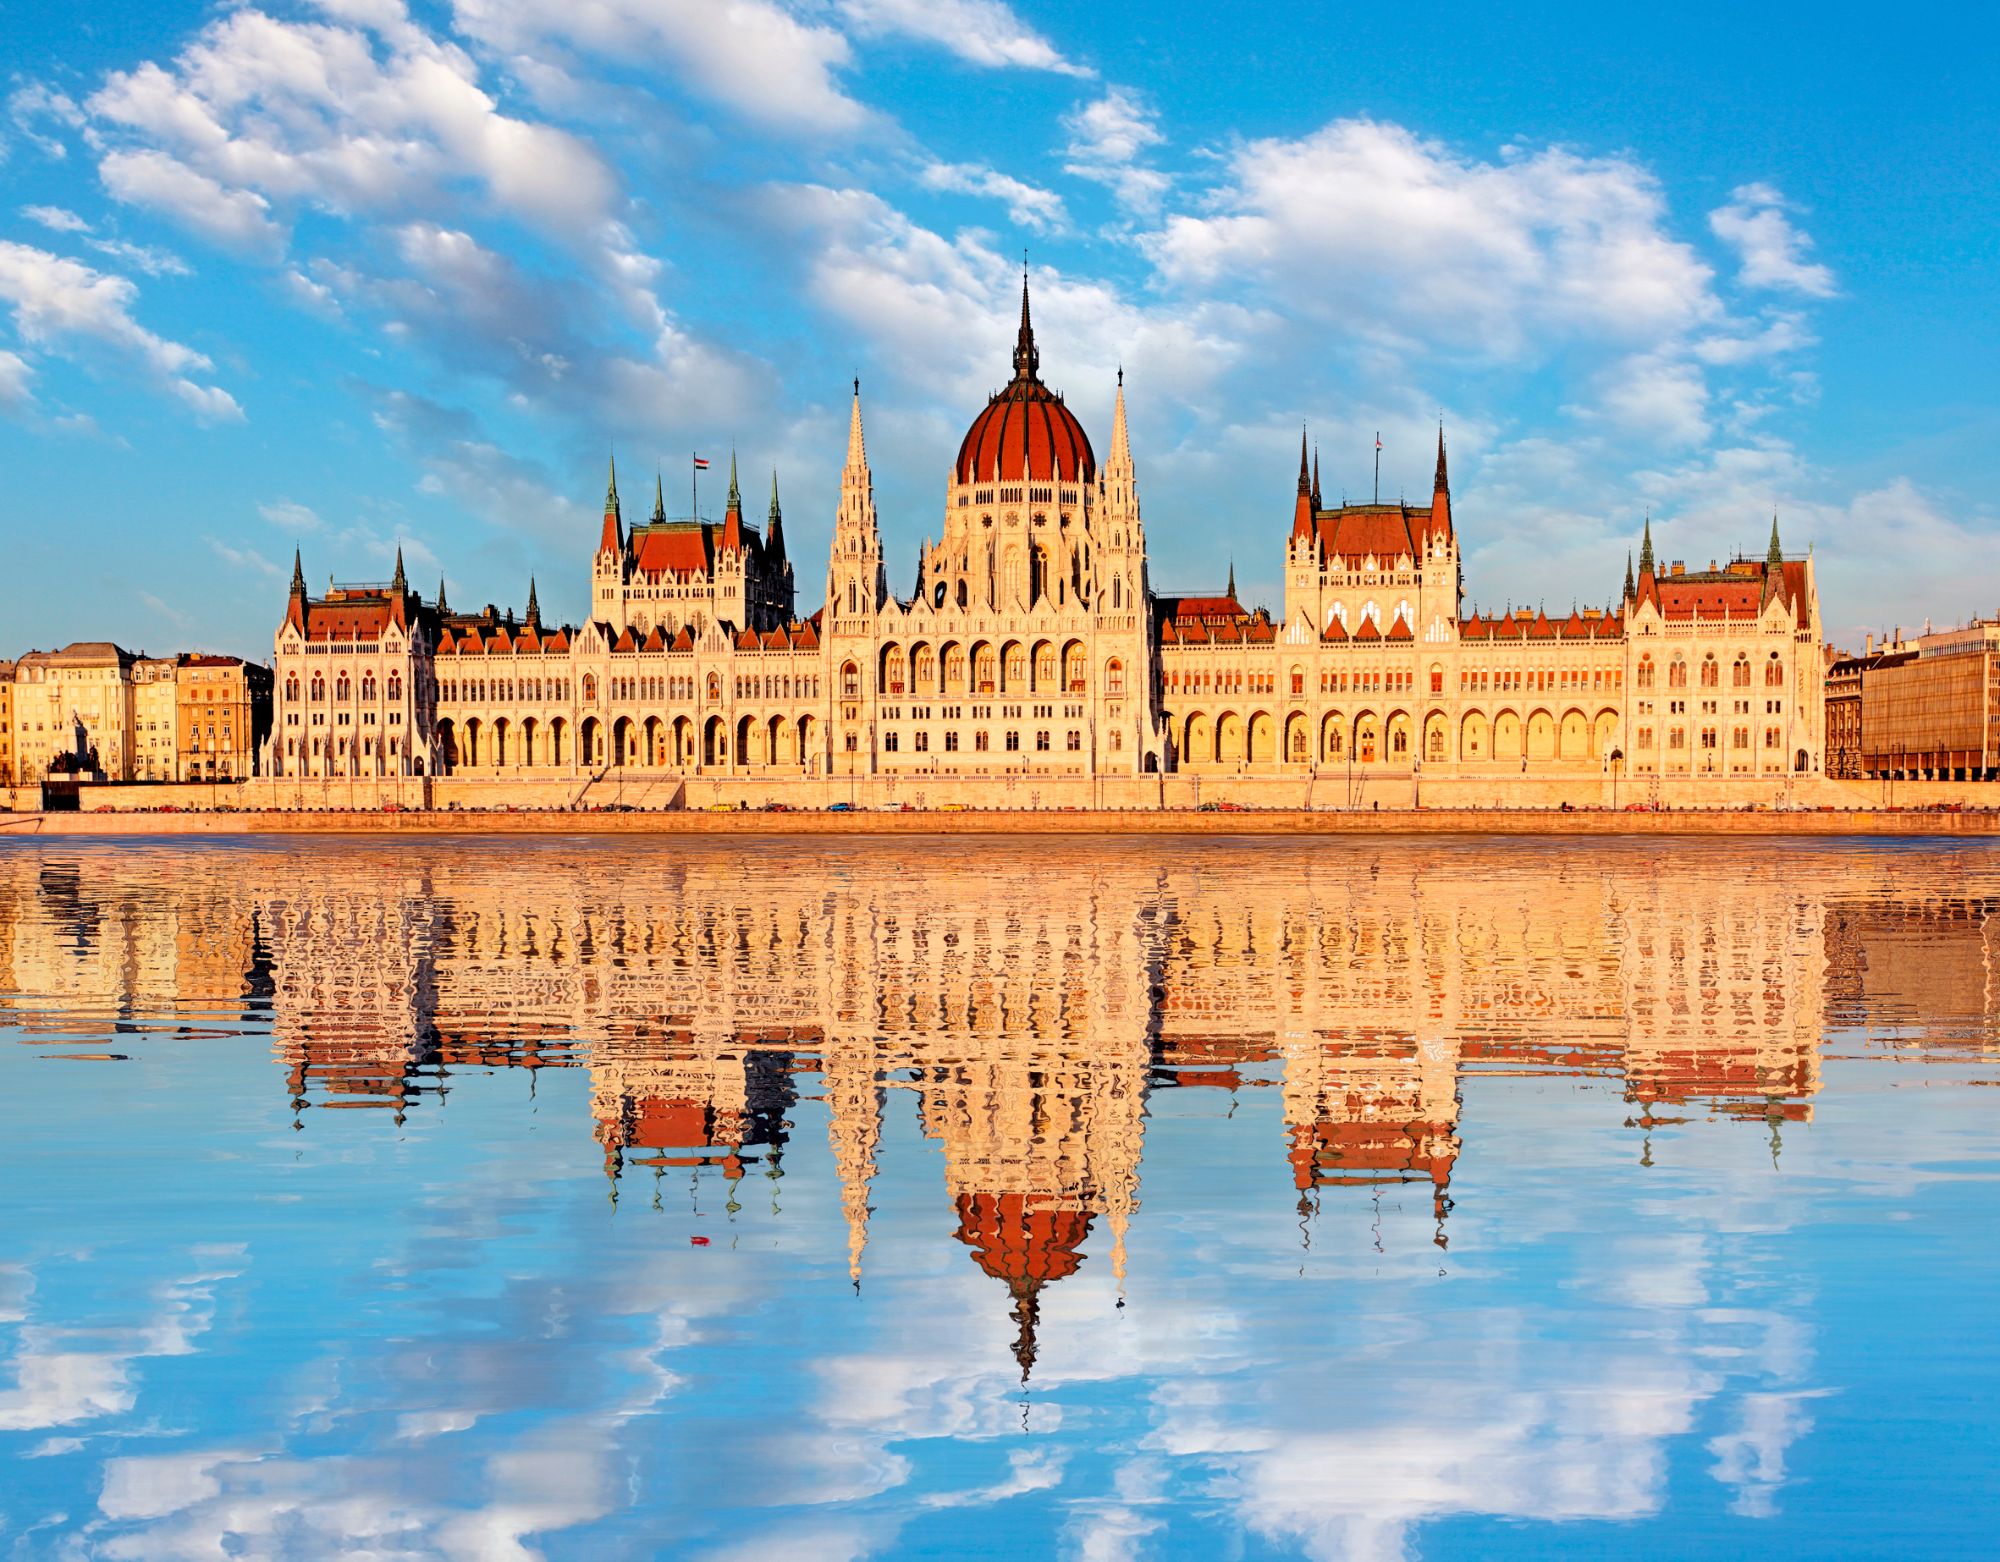 budapest parliament tour